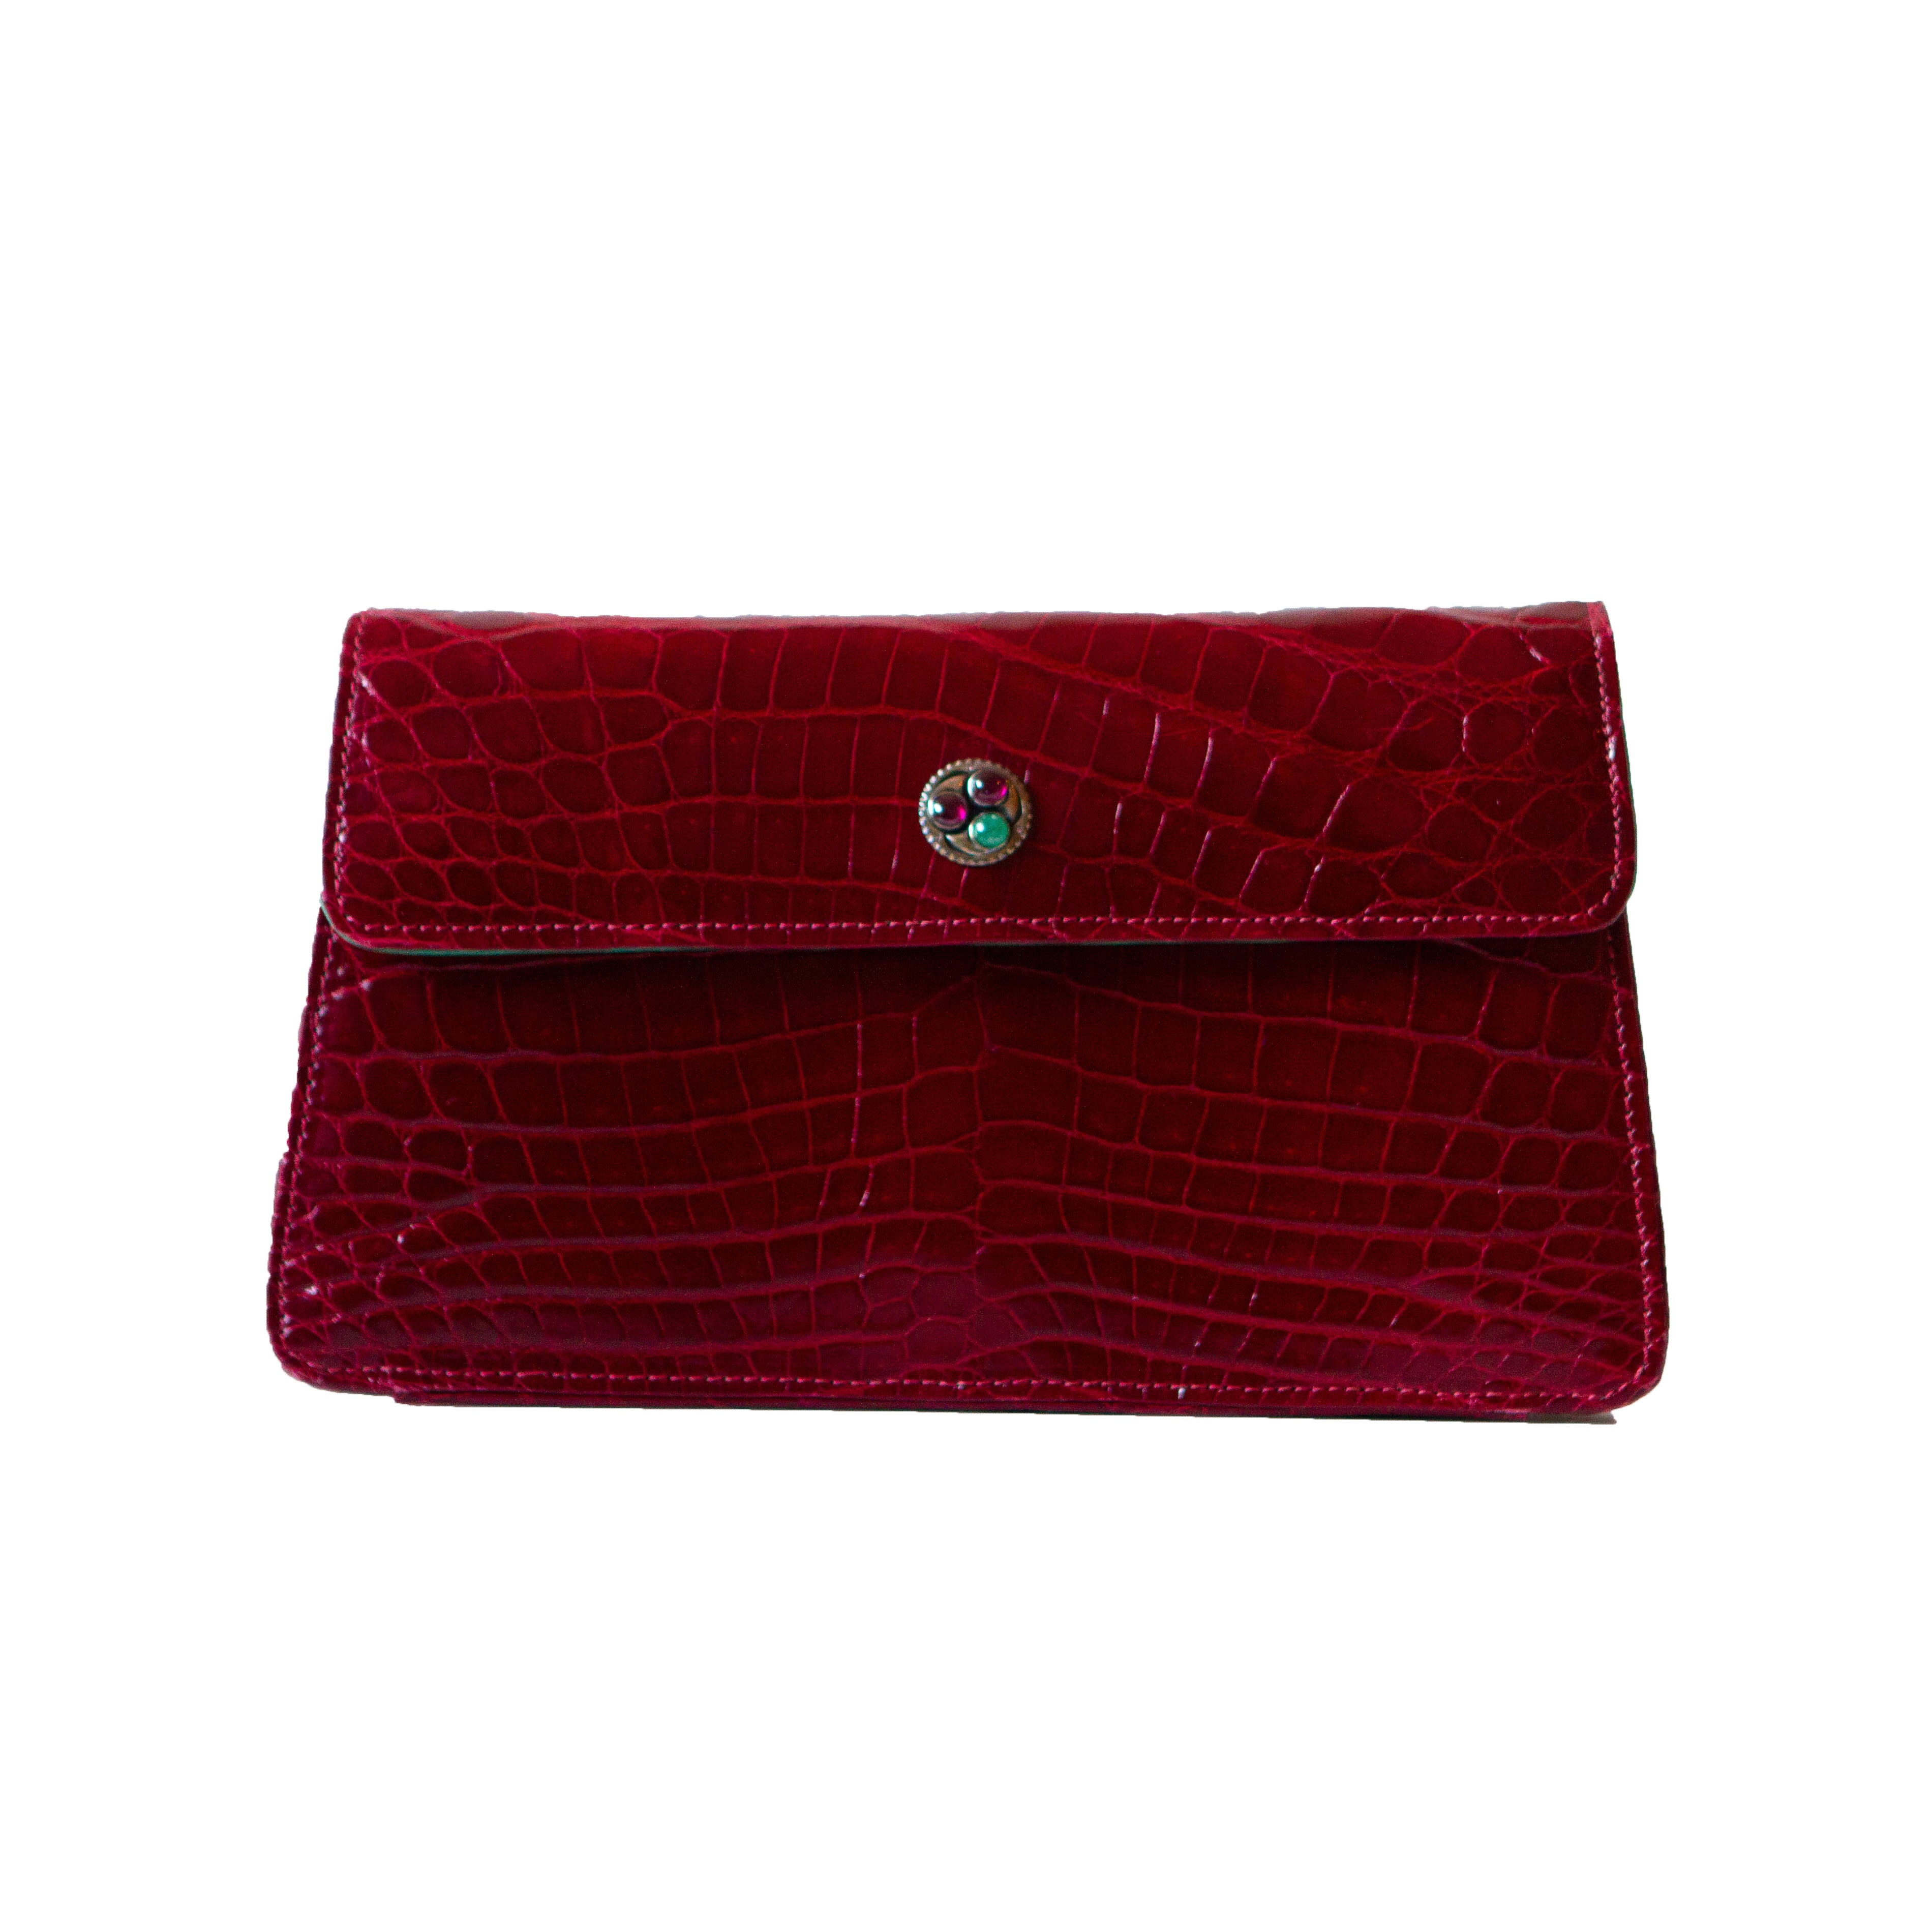 Red Faux Alligator Handbag by Steve Madden - Gem